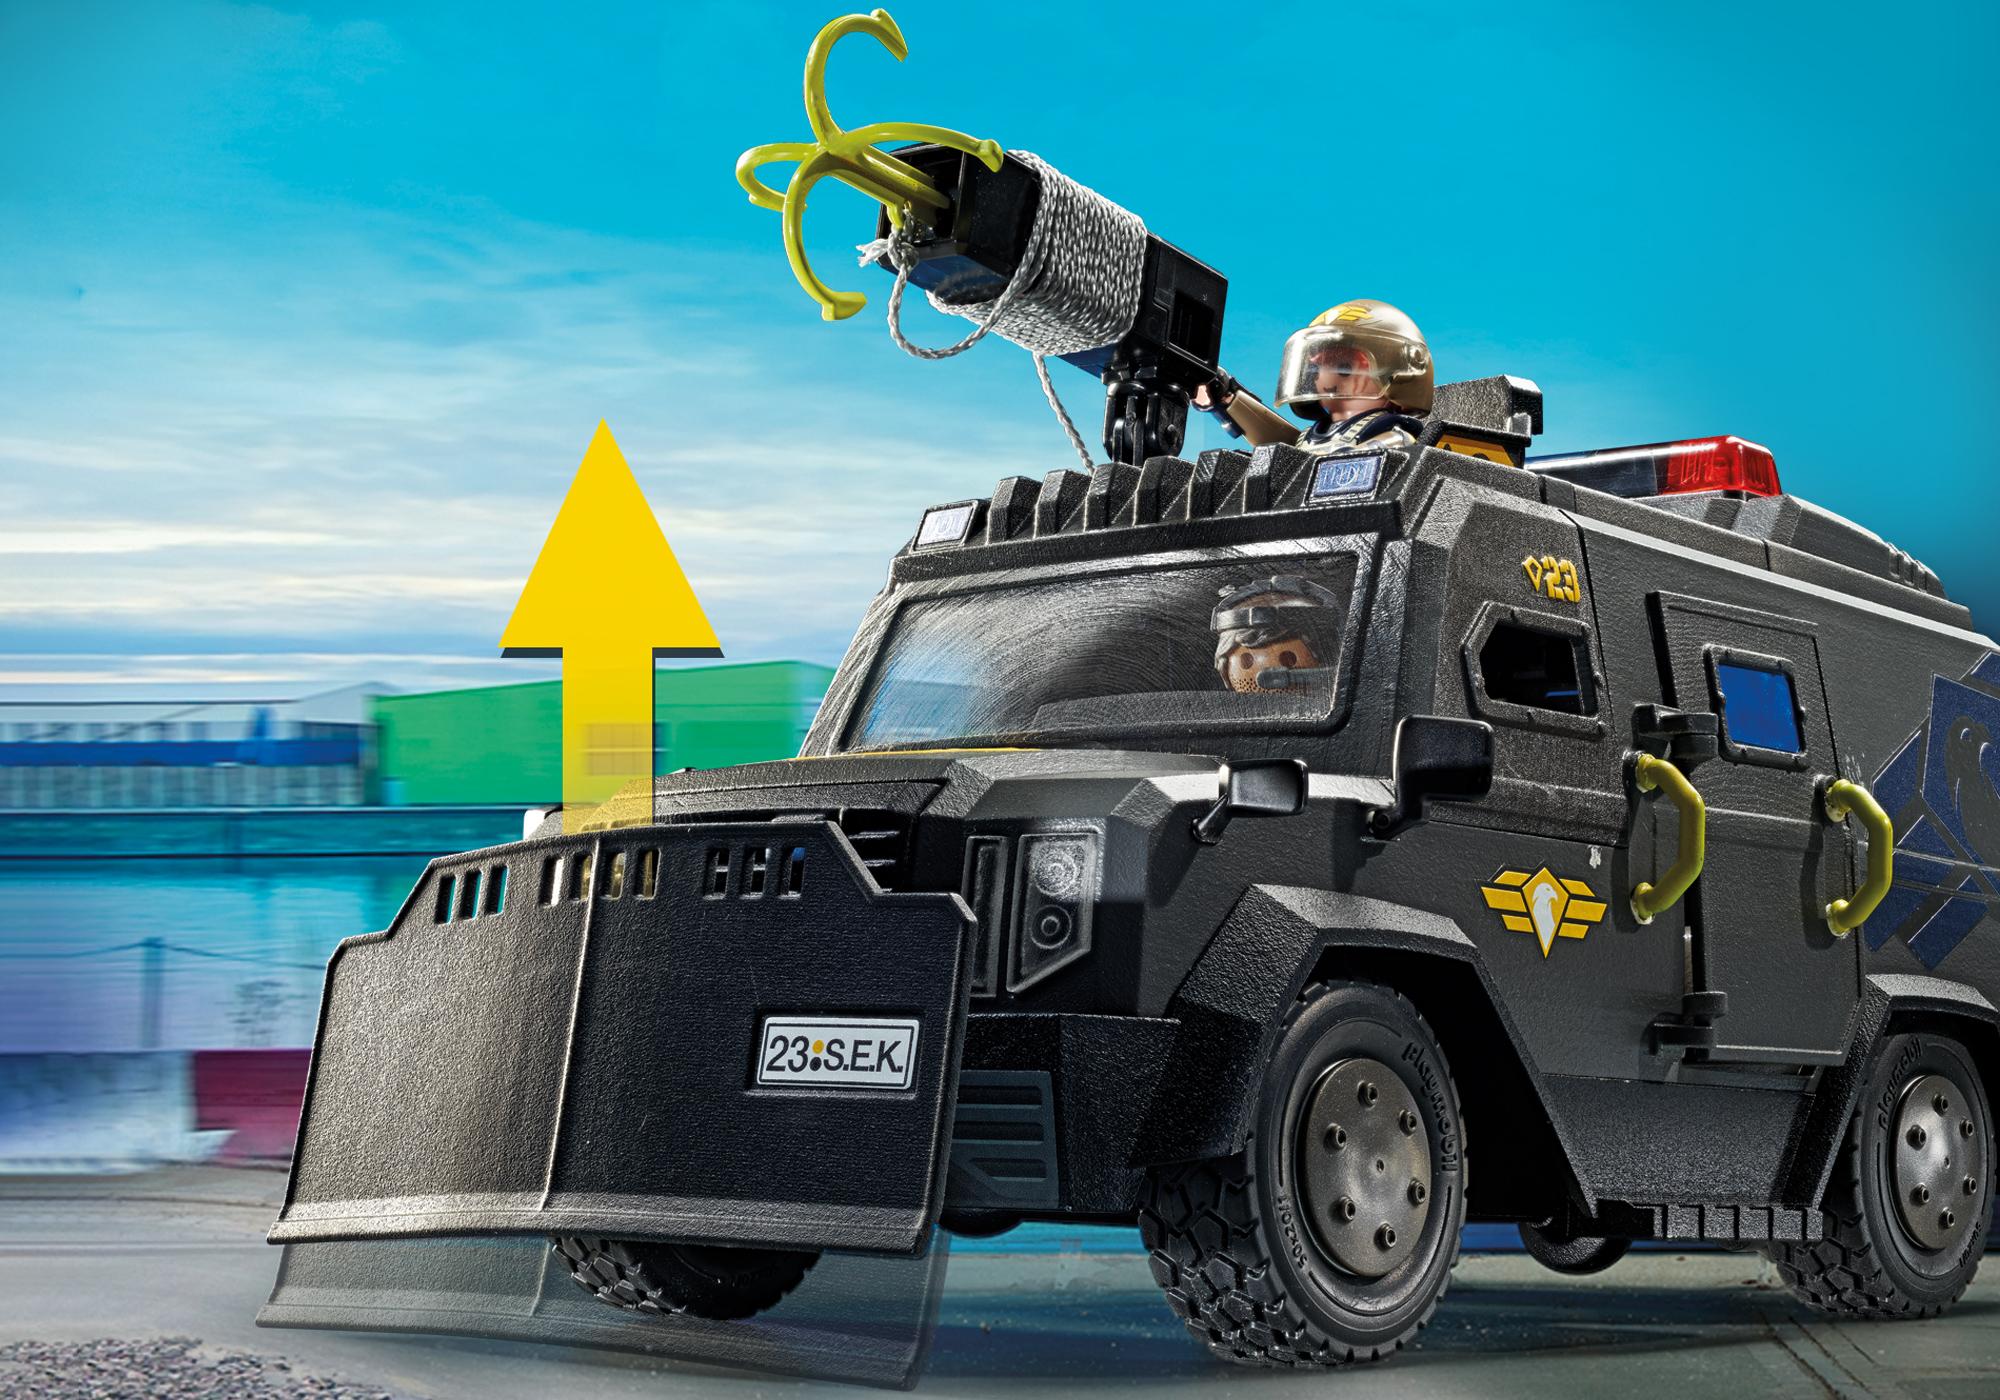 Acheter Playmobil 71144 Police unité spéciale Vehicule tout-terrain -  Joubec acheter jouets et jeux au Québec et Canada - Achat en ligne